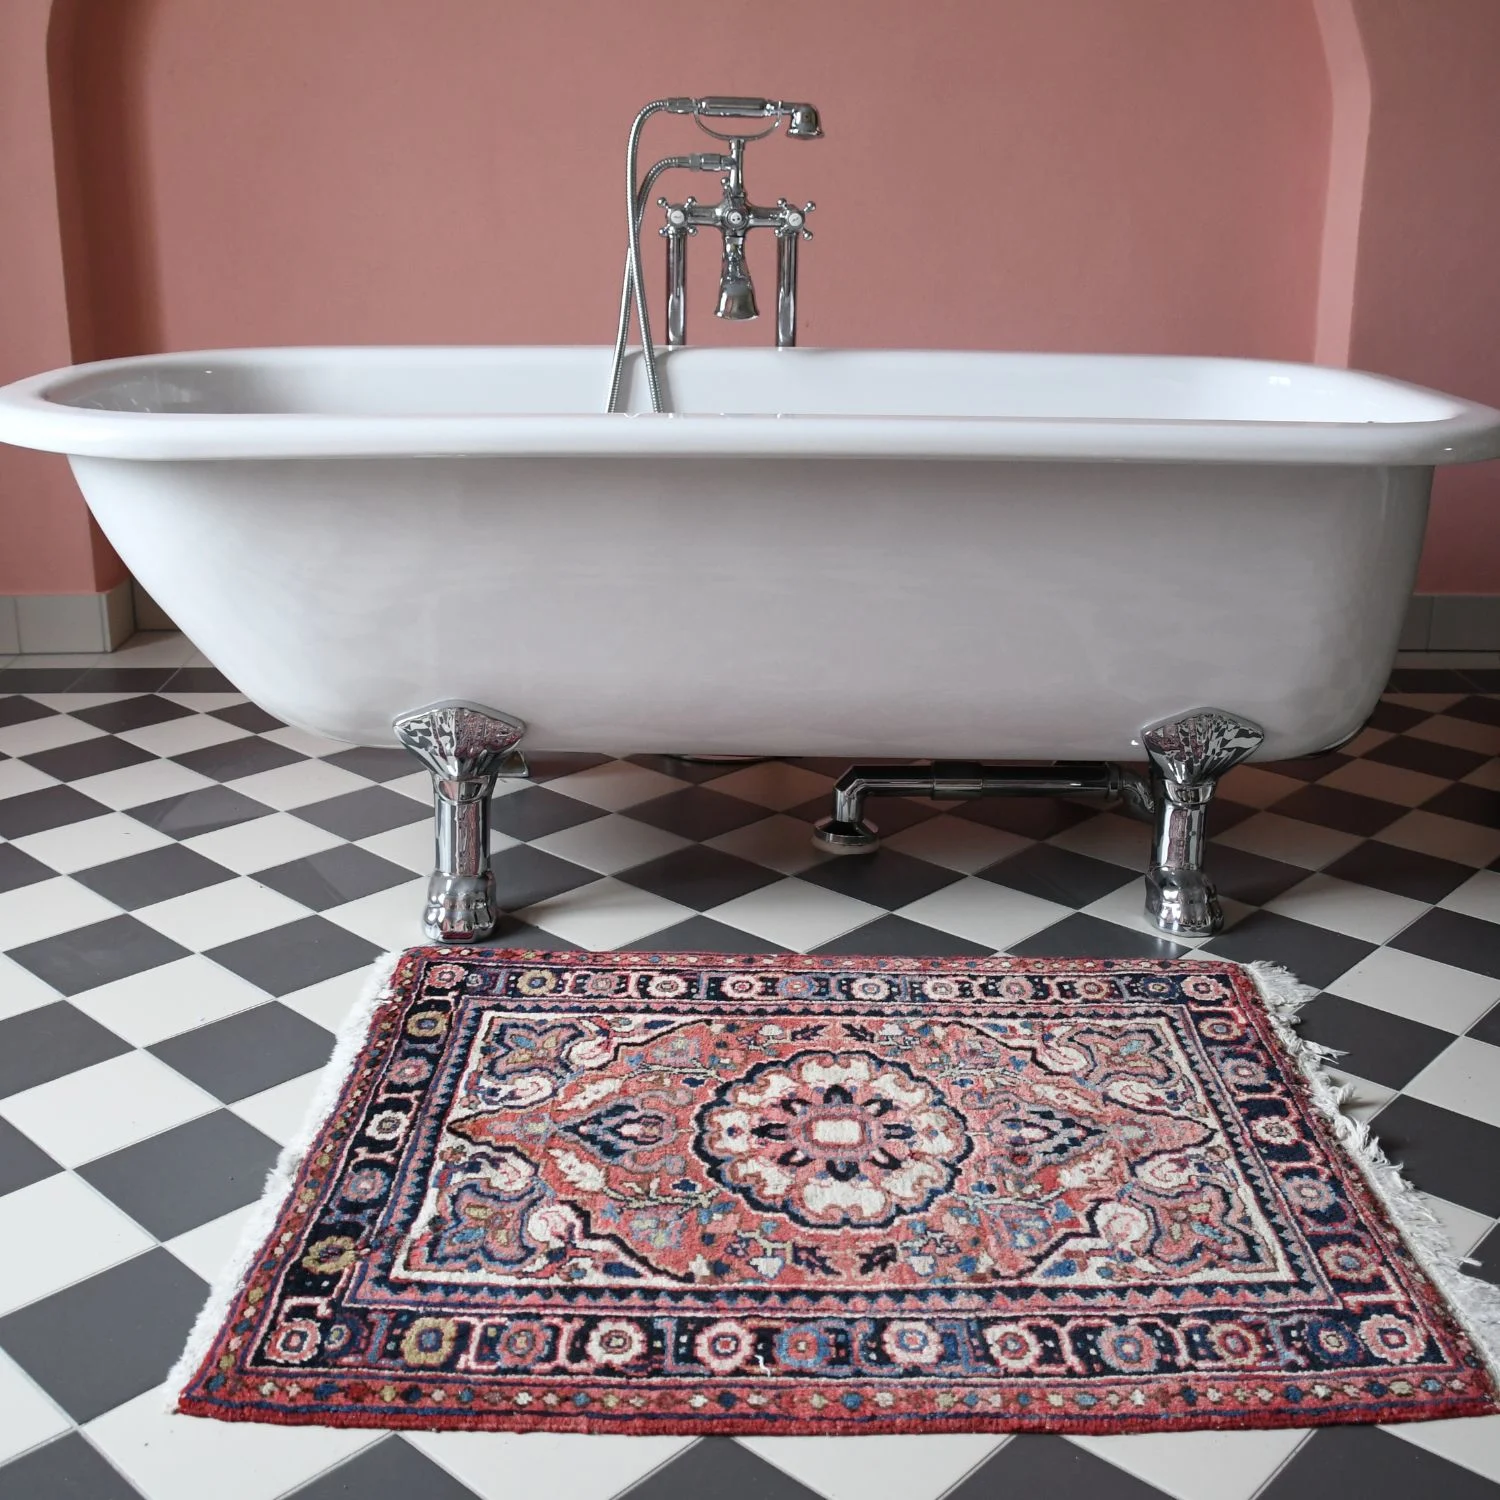 Ein orientalischer Teppich im Badezimmer